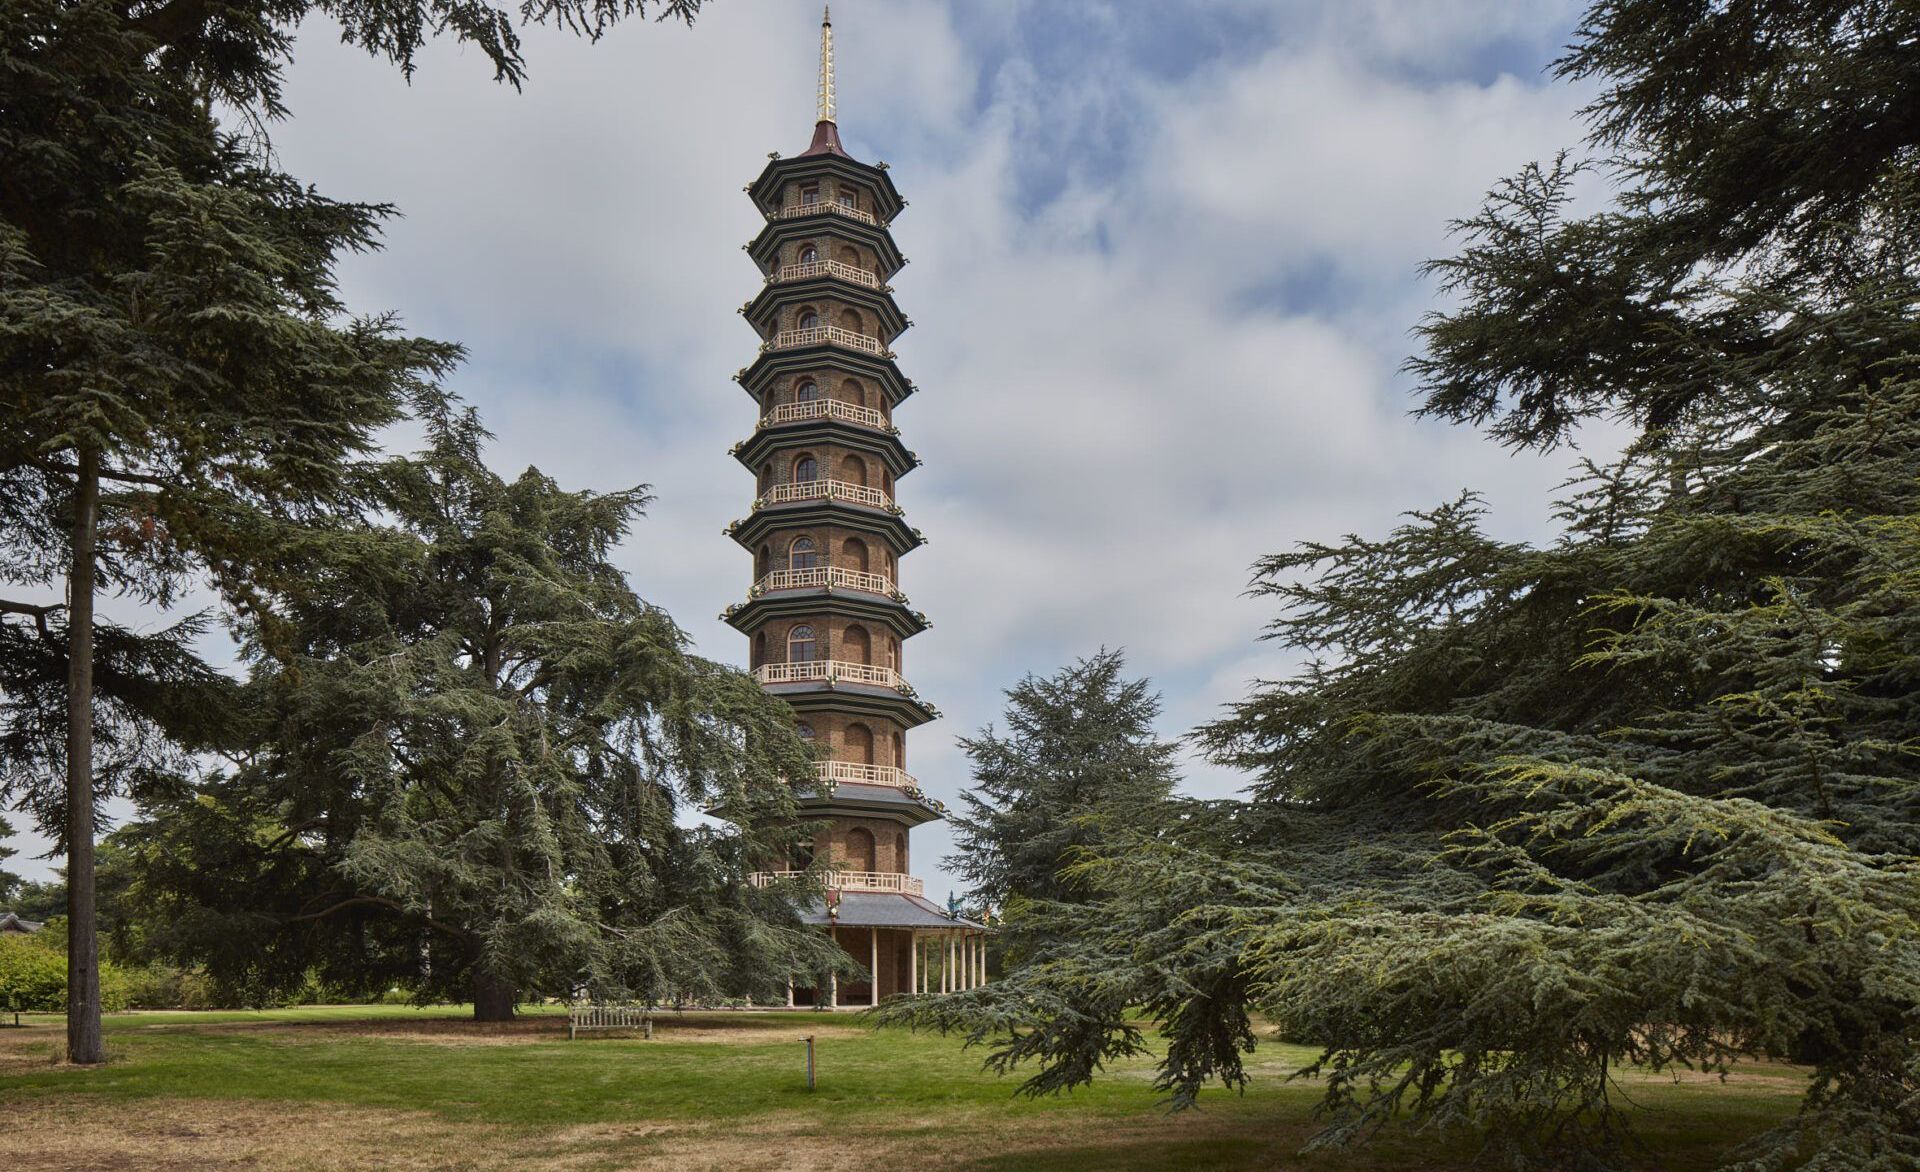 Kew Pagoda